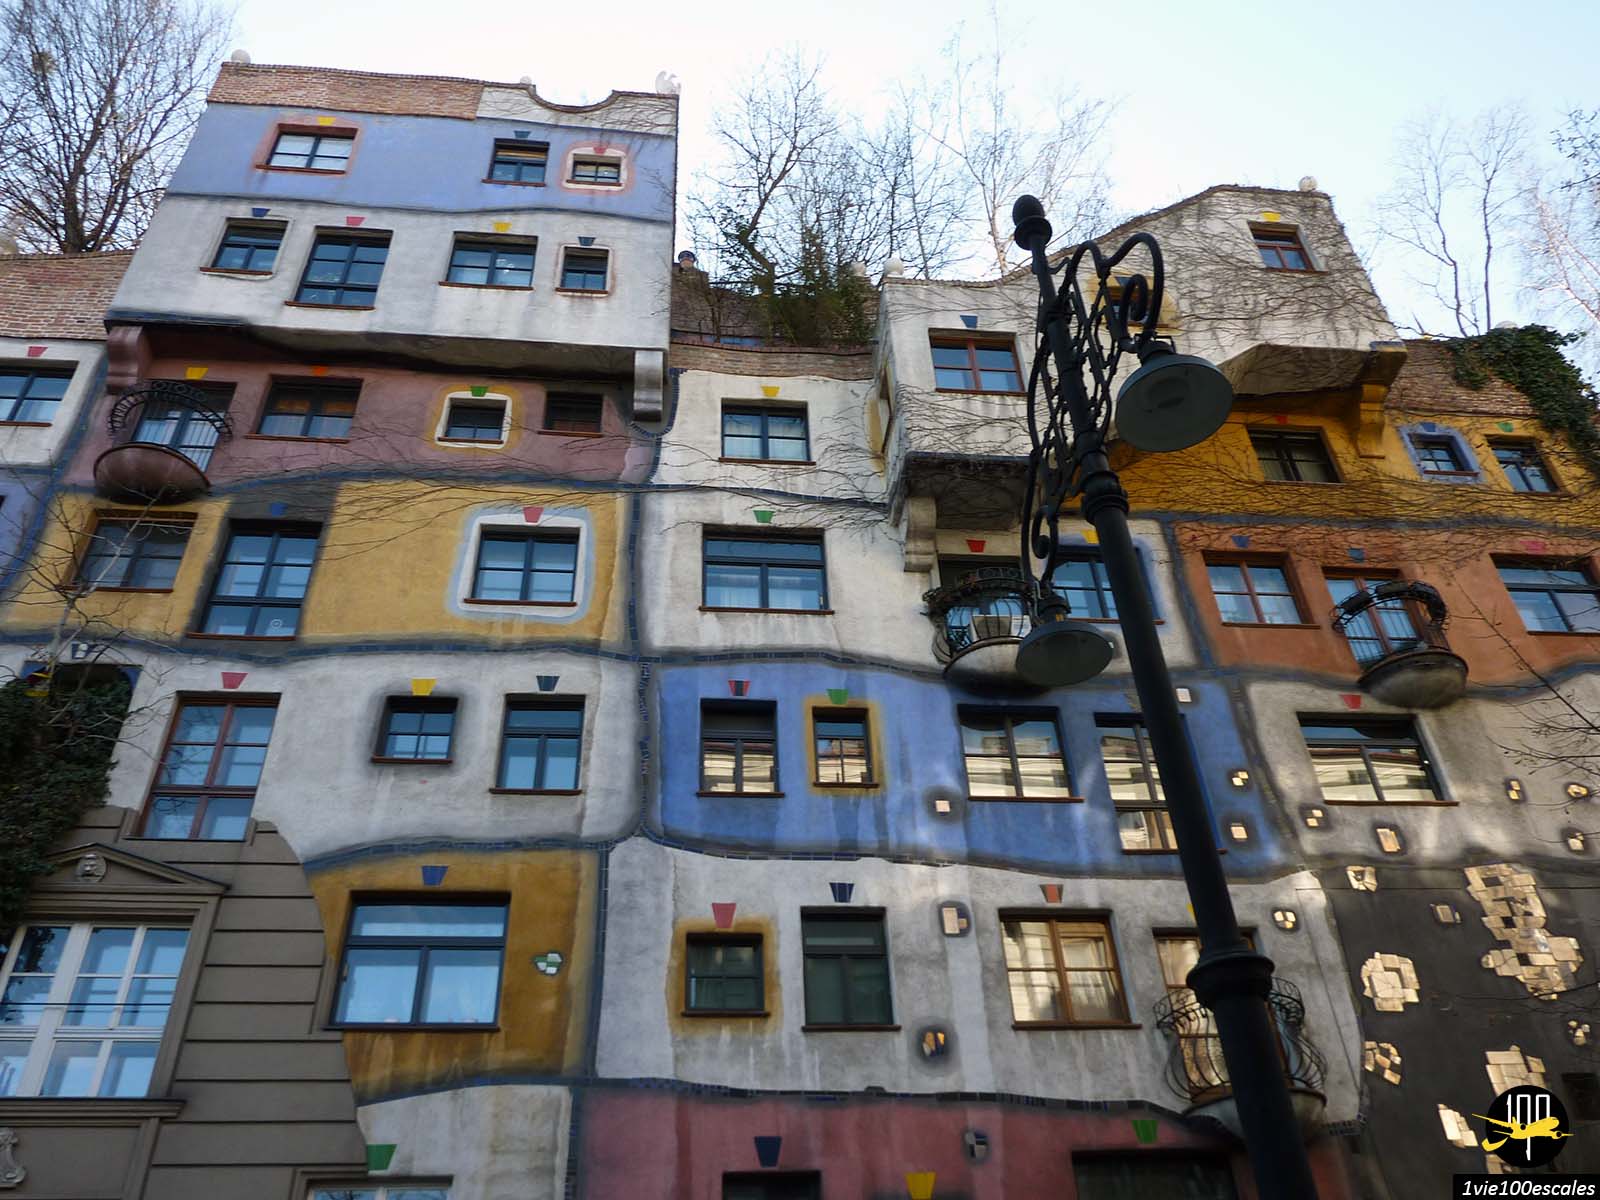 la maison colorée Hundertwasserhaus est sans aucun doute l'immeuble de logements le plus original de Vienne